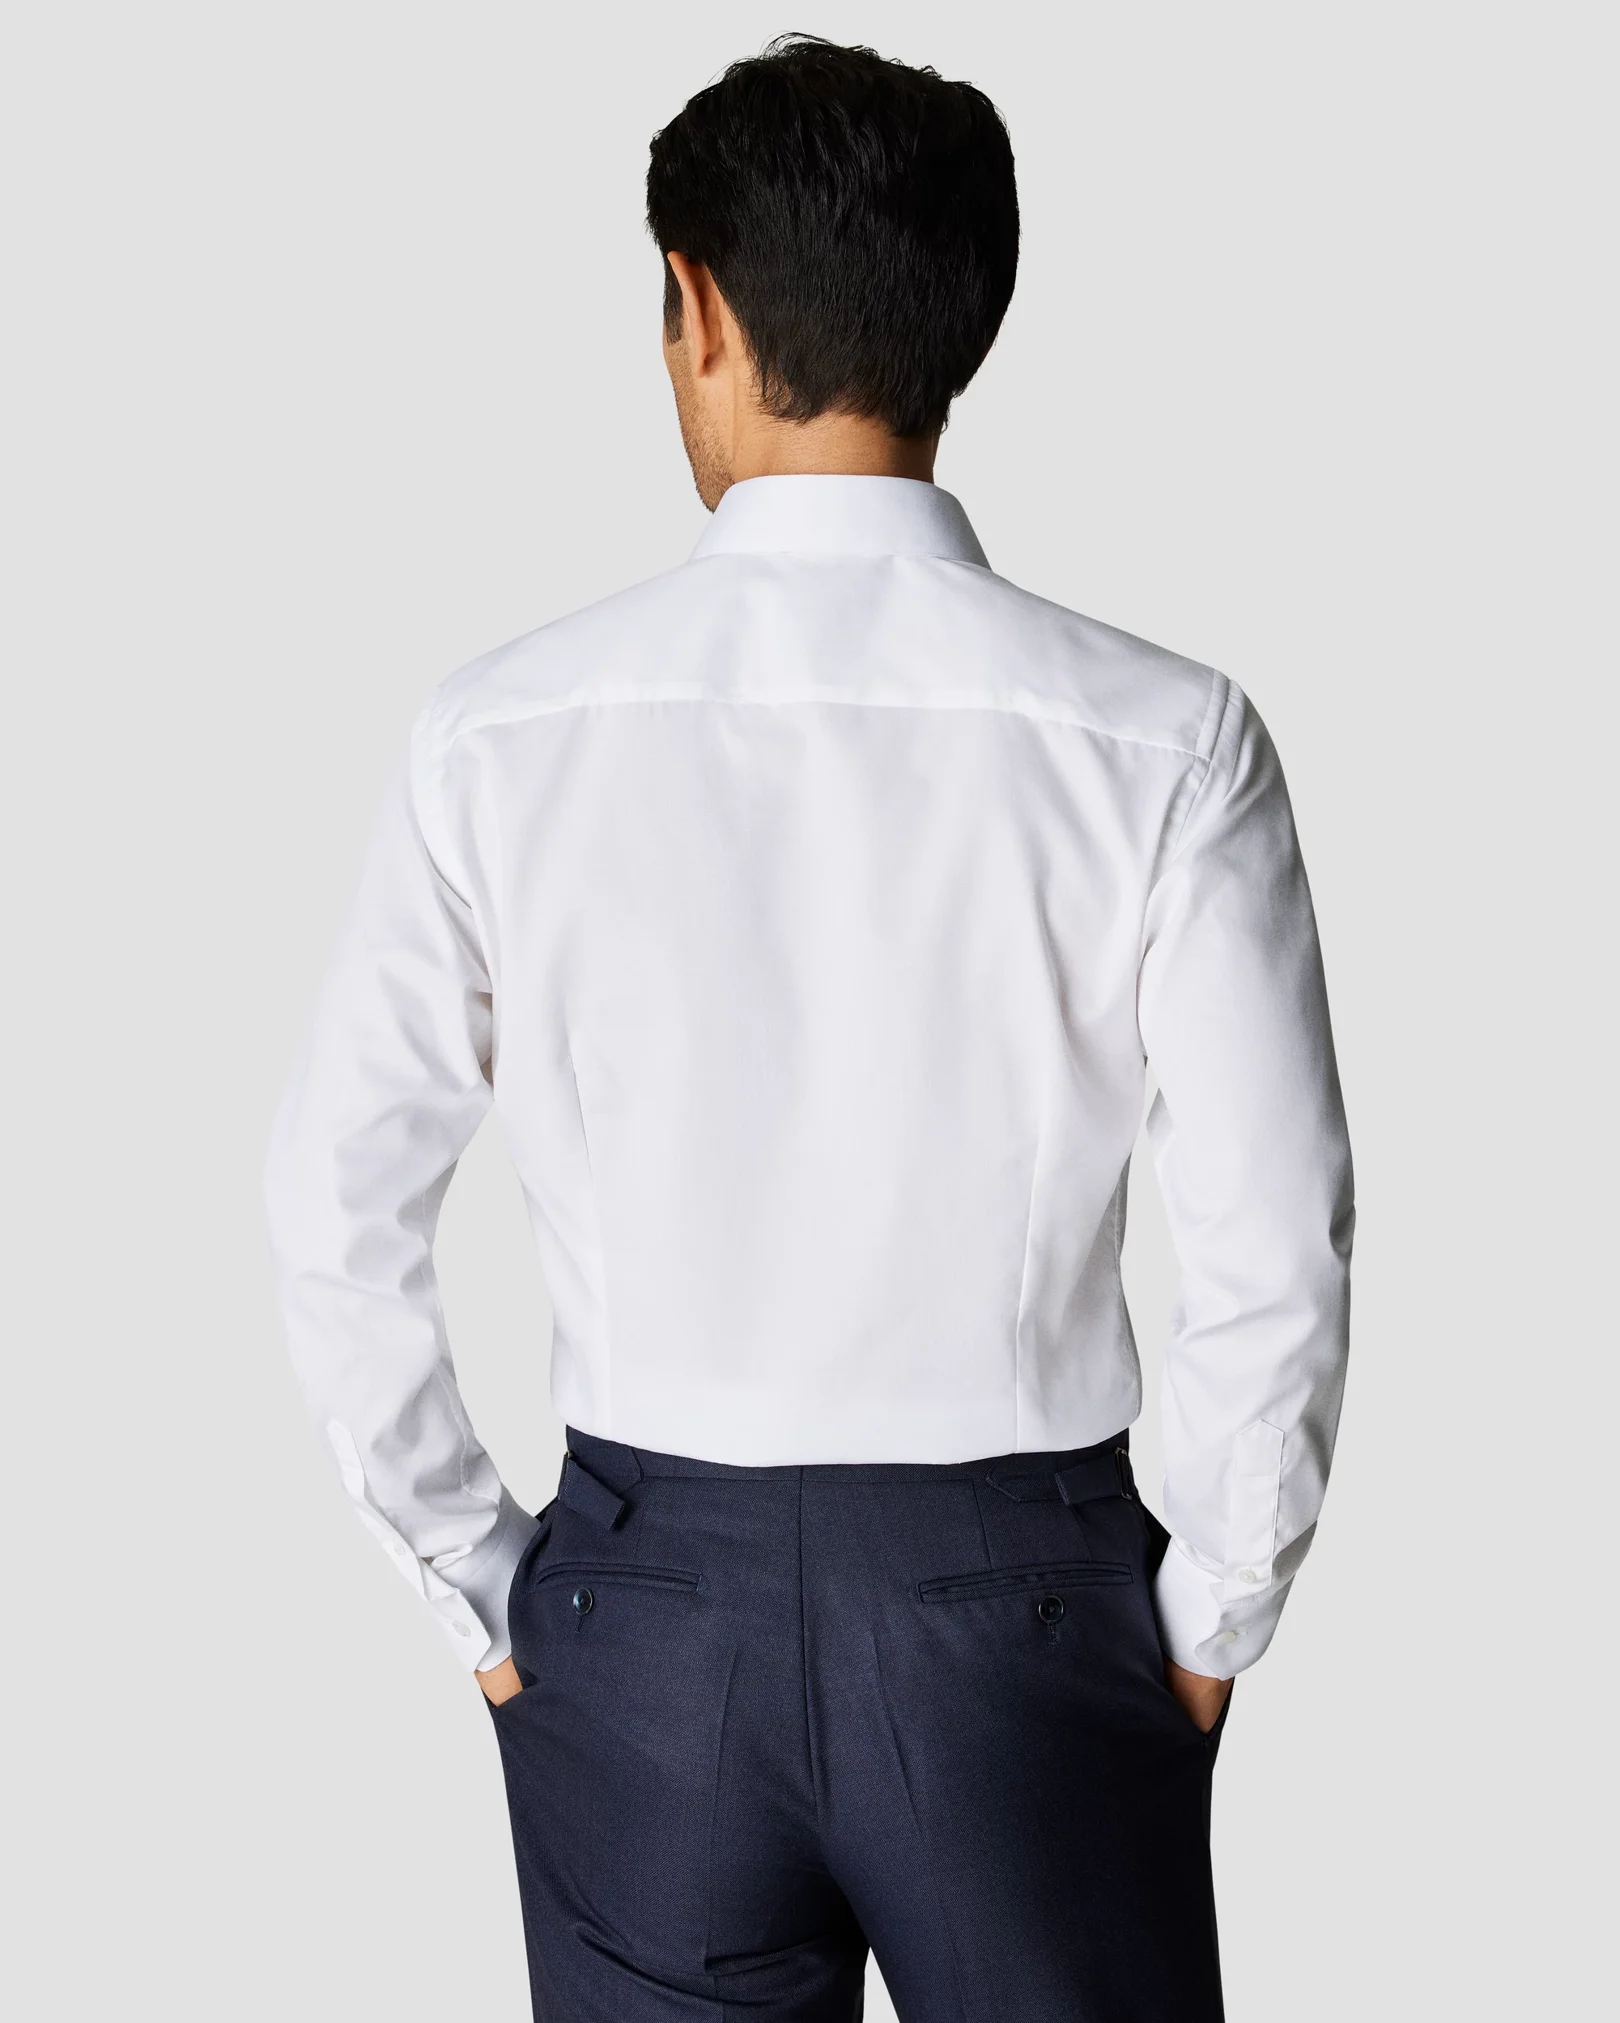 Navy blue cotton pique shirt – White buttons – Carbon Crown